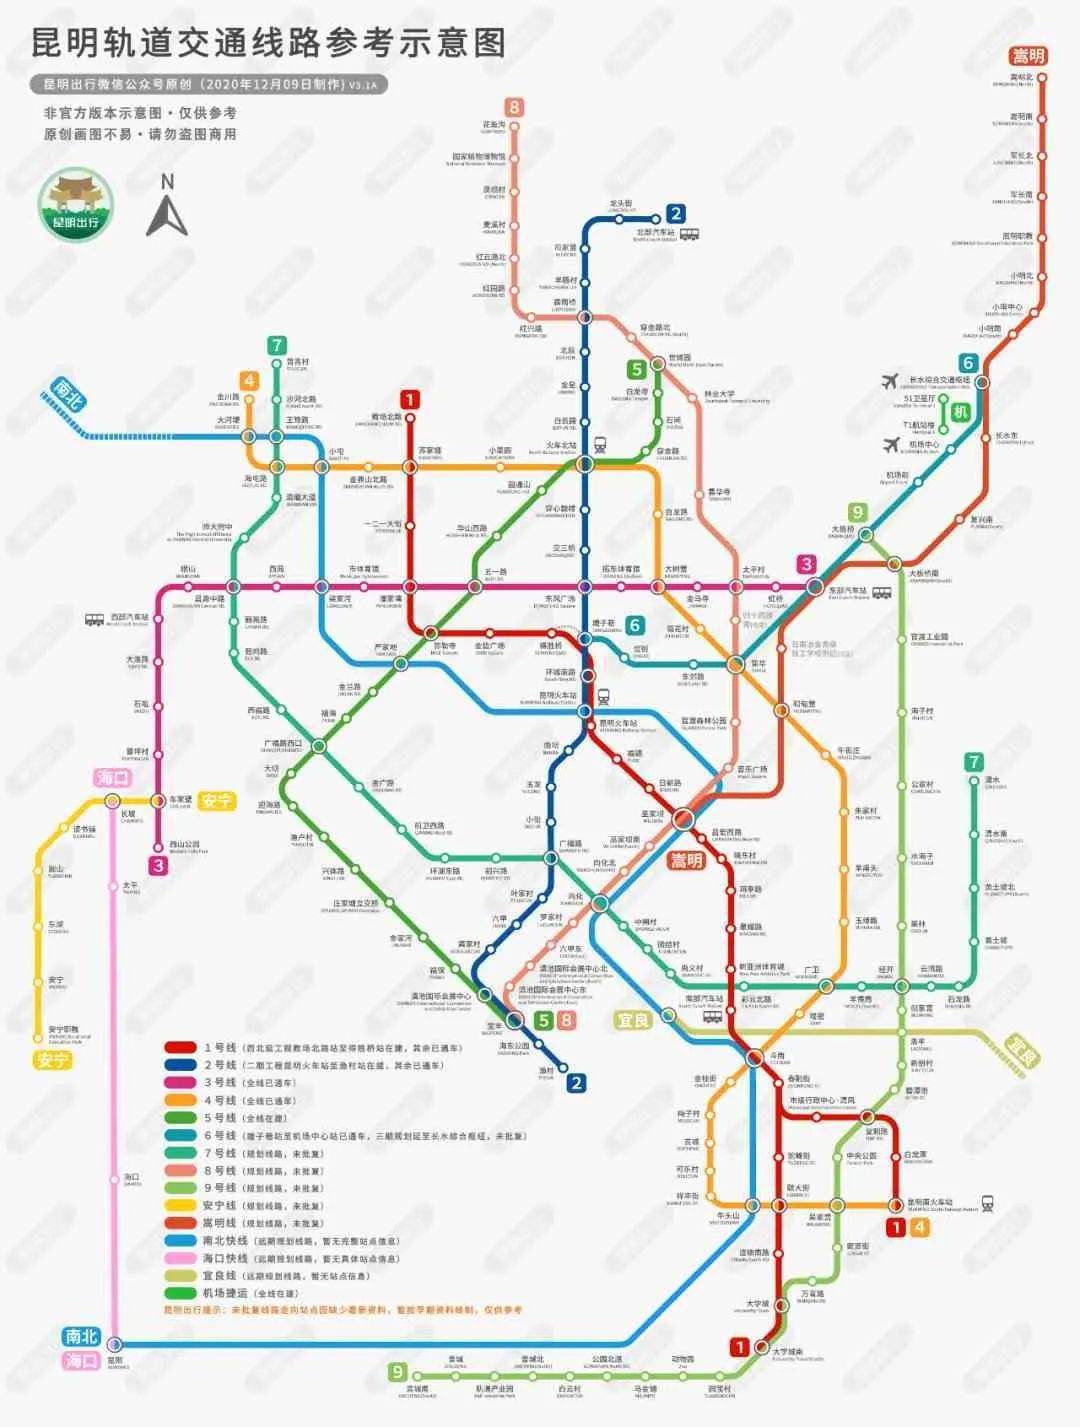 市城市轨道交通线网规划(2011版),预留  海口快线从安宁线长坡站引出